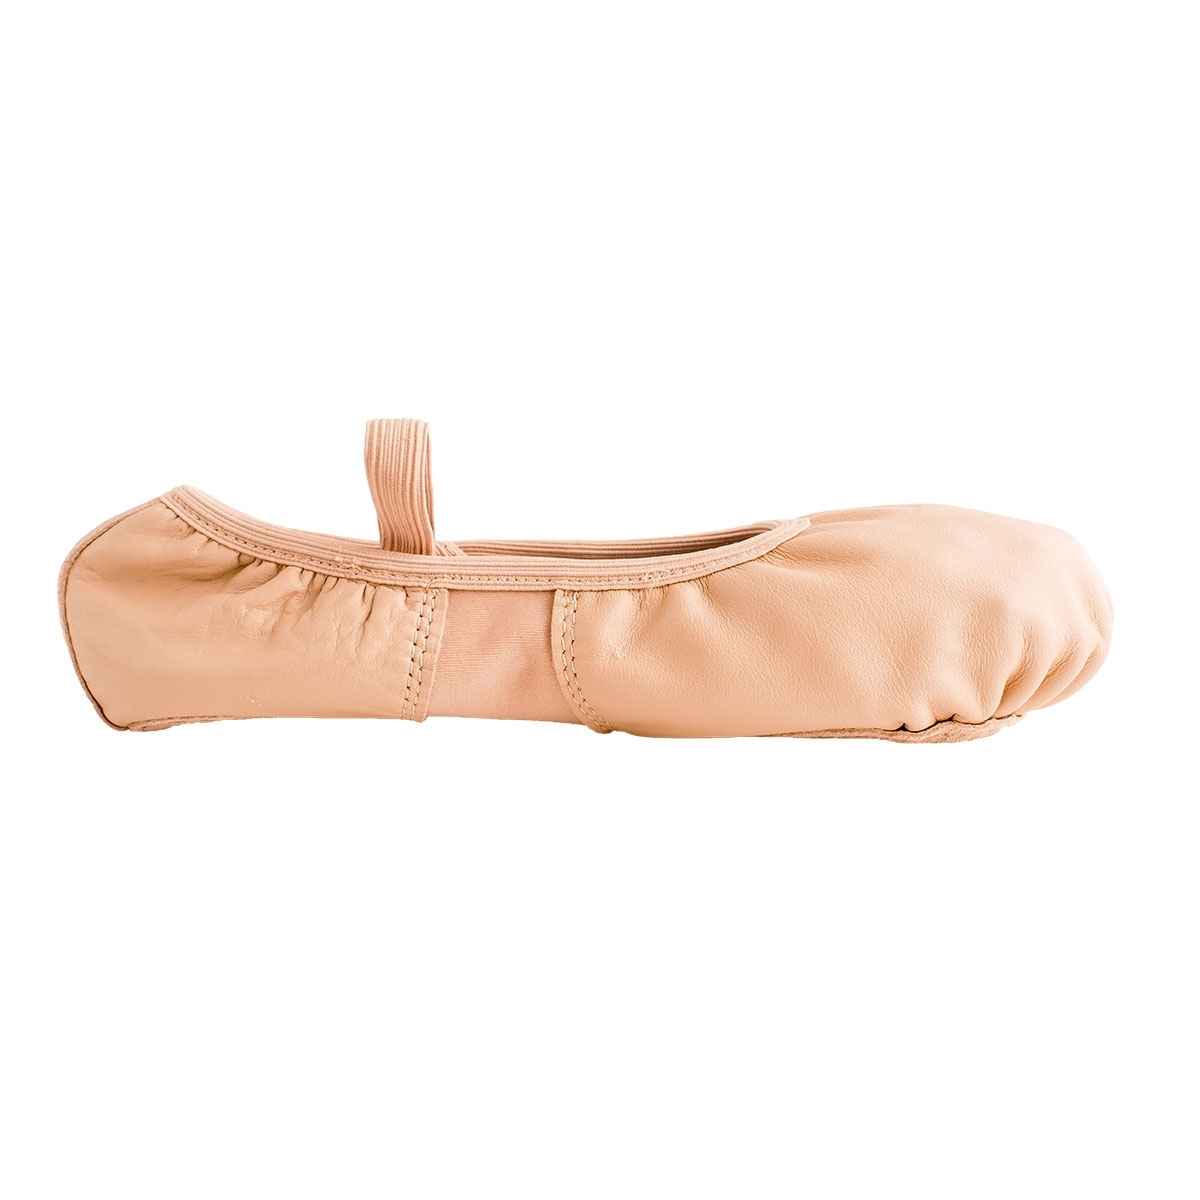 Leann Women's Pink Leather/Spandex Split-Sole Ballet Shoes - Kids